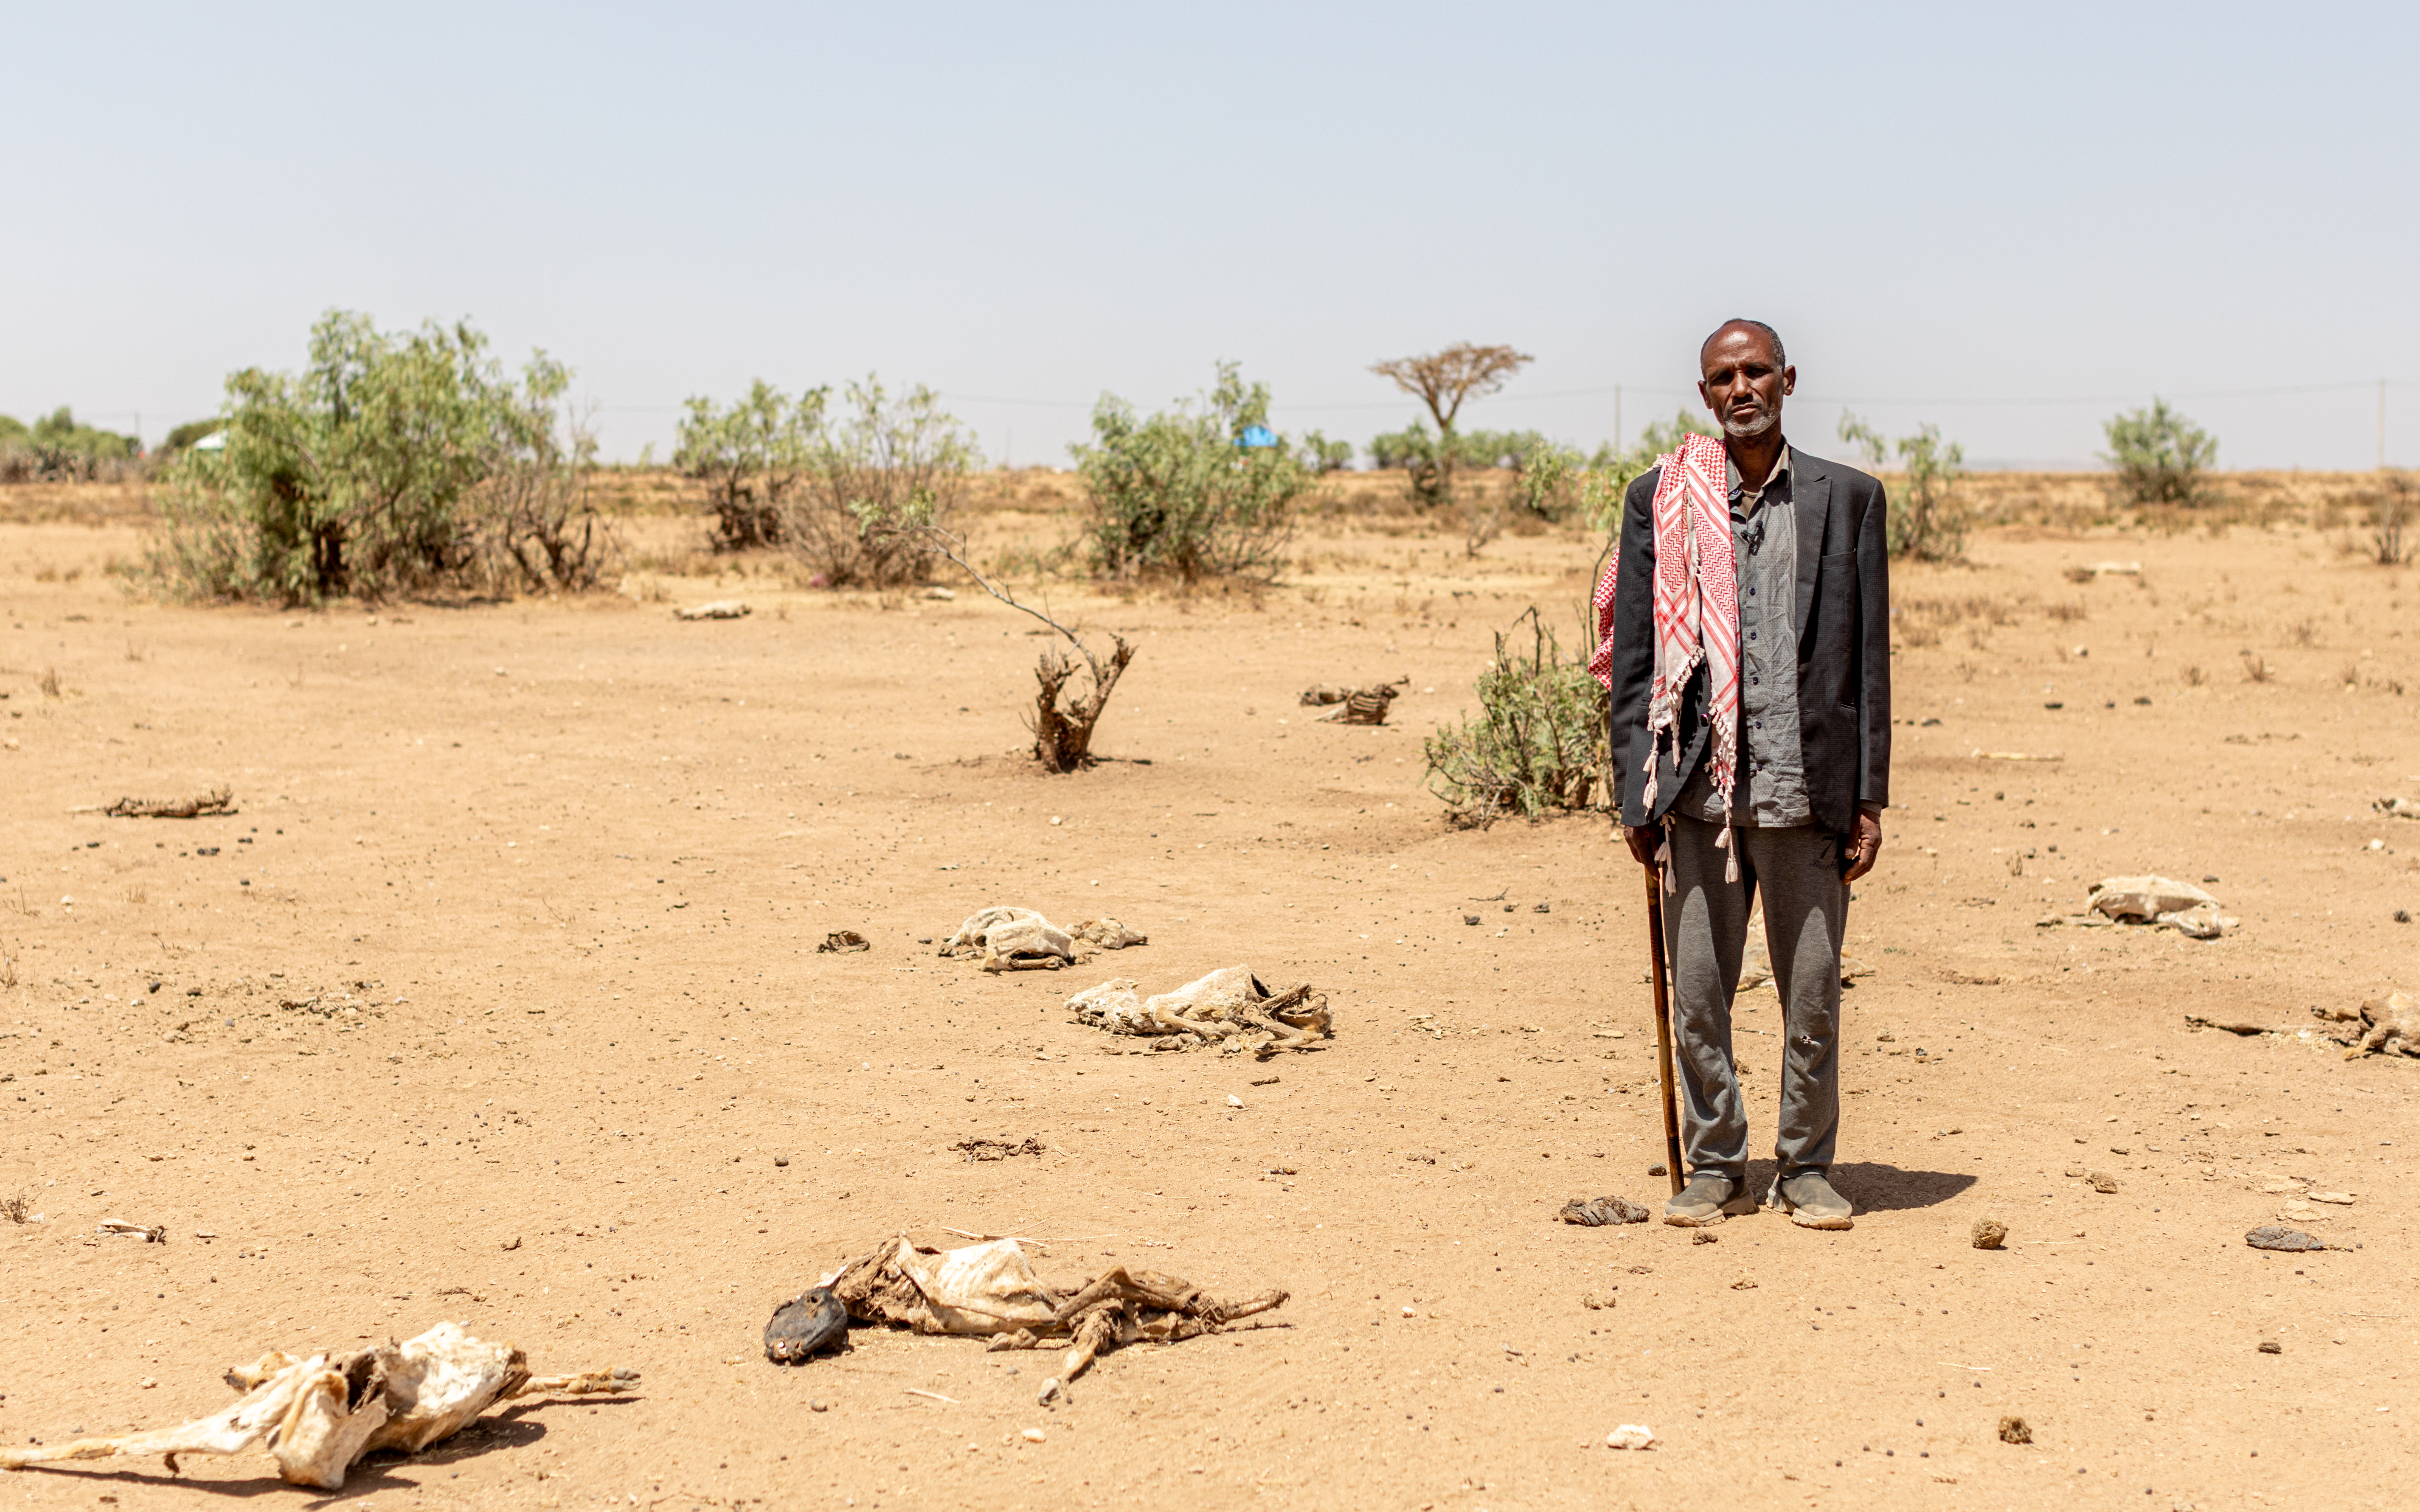 Ein Binnenvertriebener aus Äthiopien steht inmitten einer verdorrten Landschaft, Tierkadaver liegen auf dem Boden